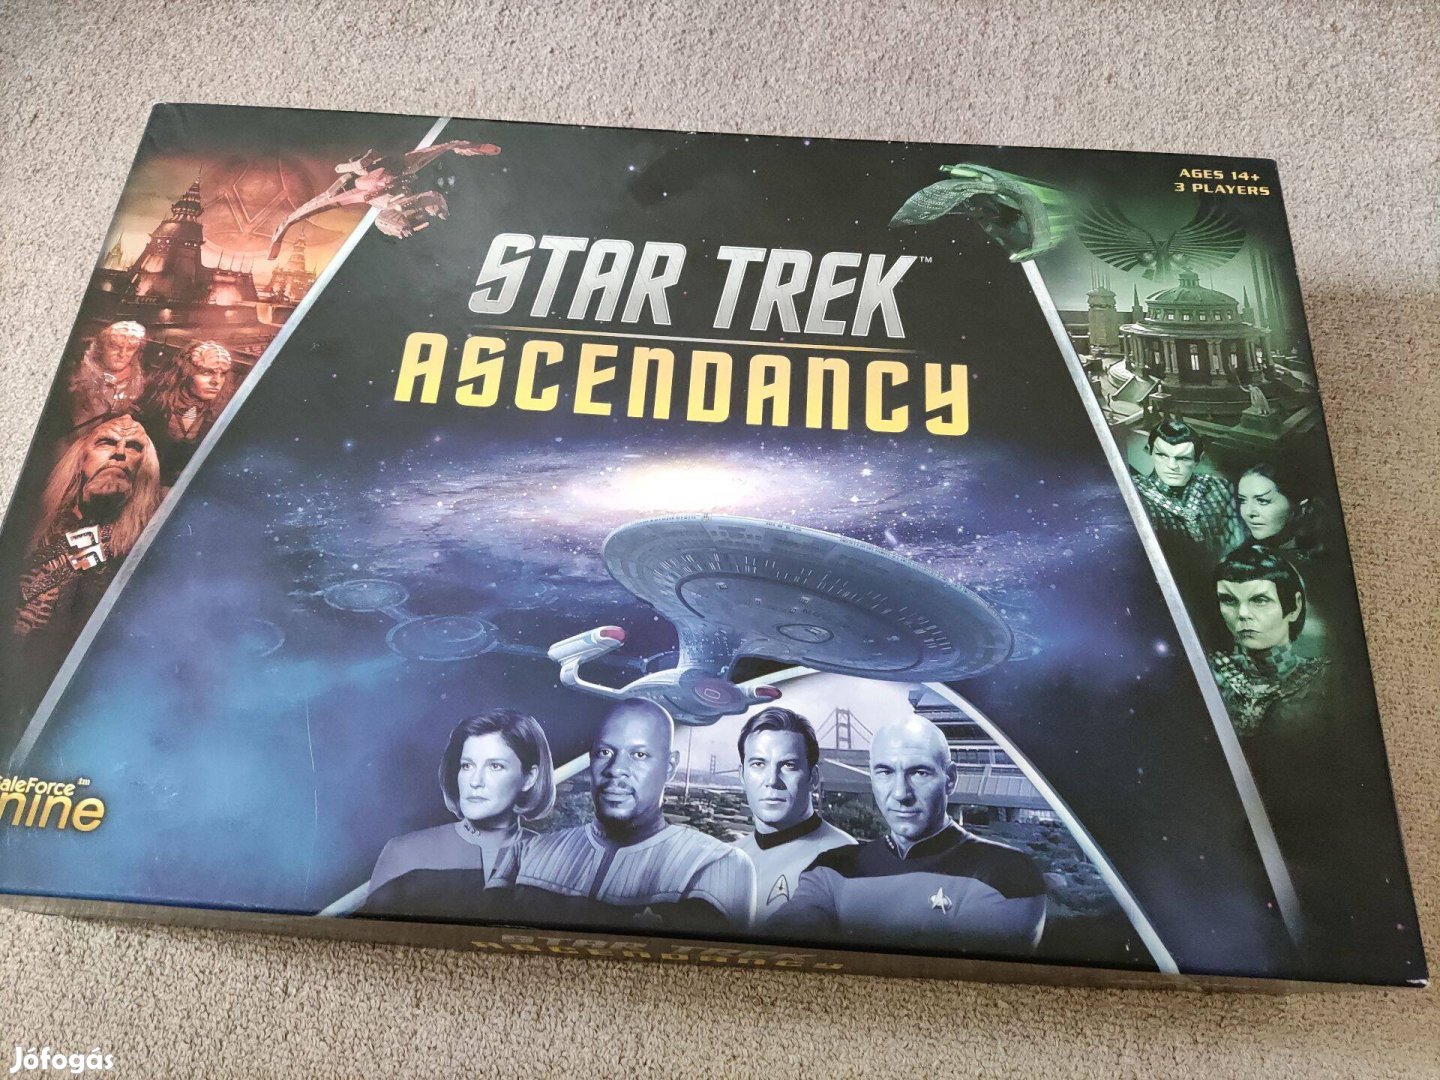 Star Trek Ascendancy + Ferengi